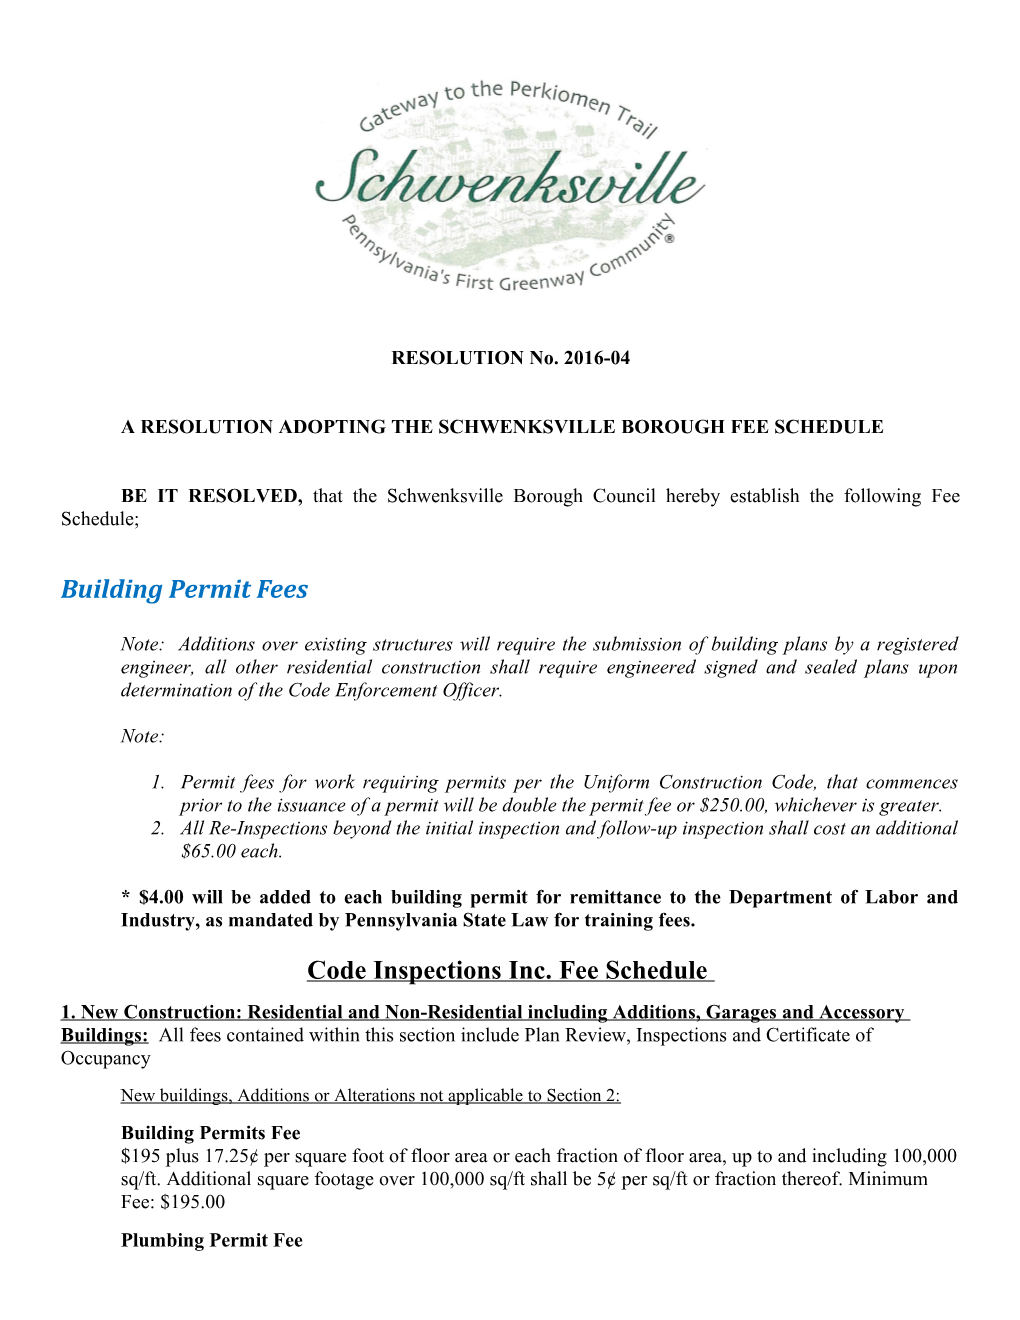 A Resolution Adopting the Schwenksville Borough Fee Schedule